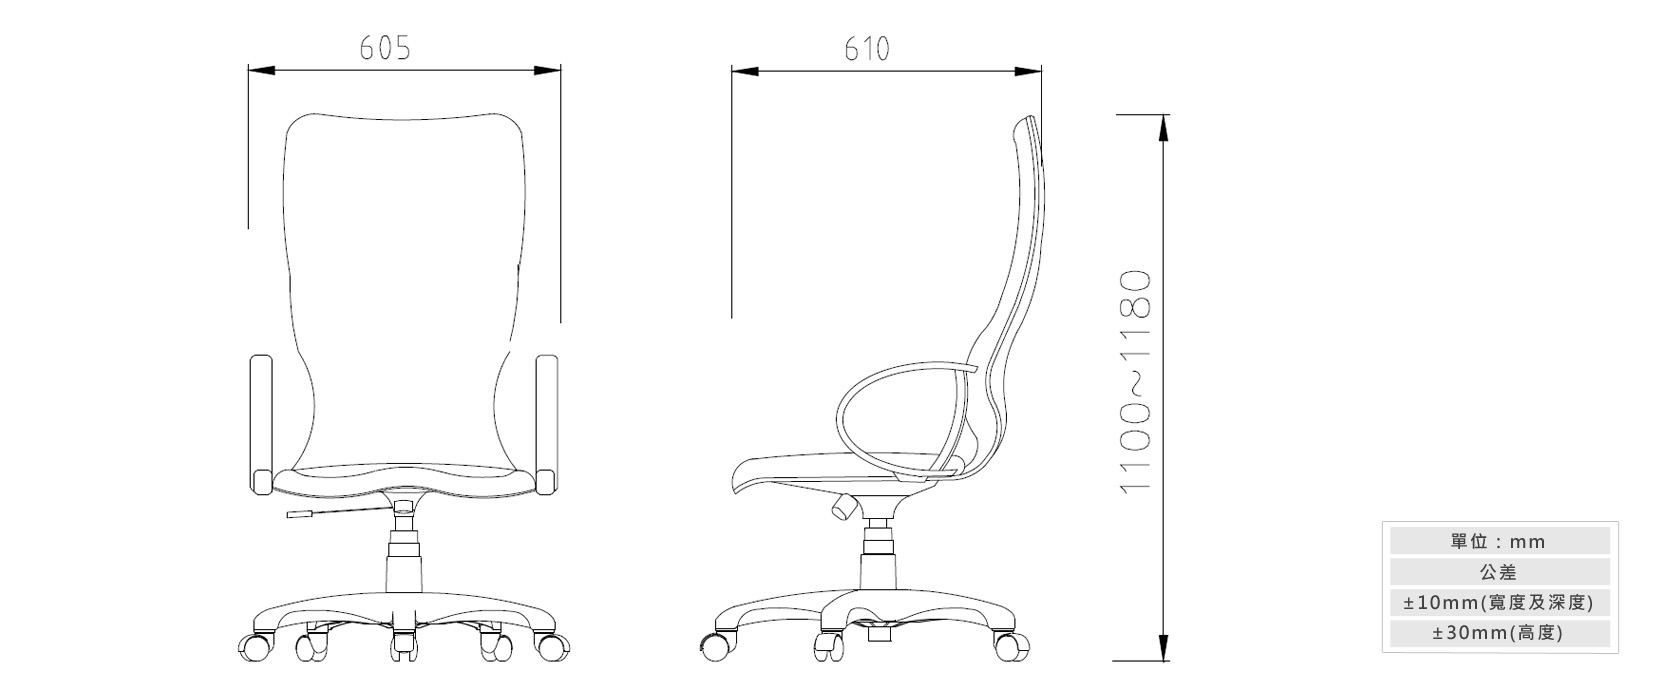 2-20 人體工學辦公椅材質說明